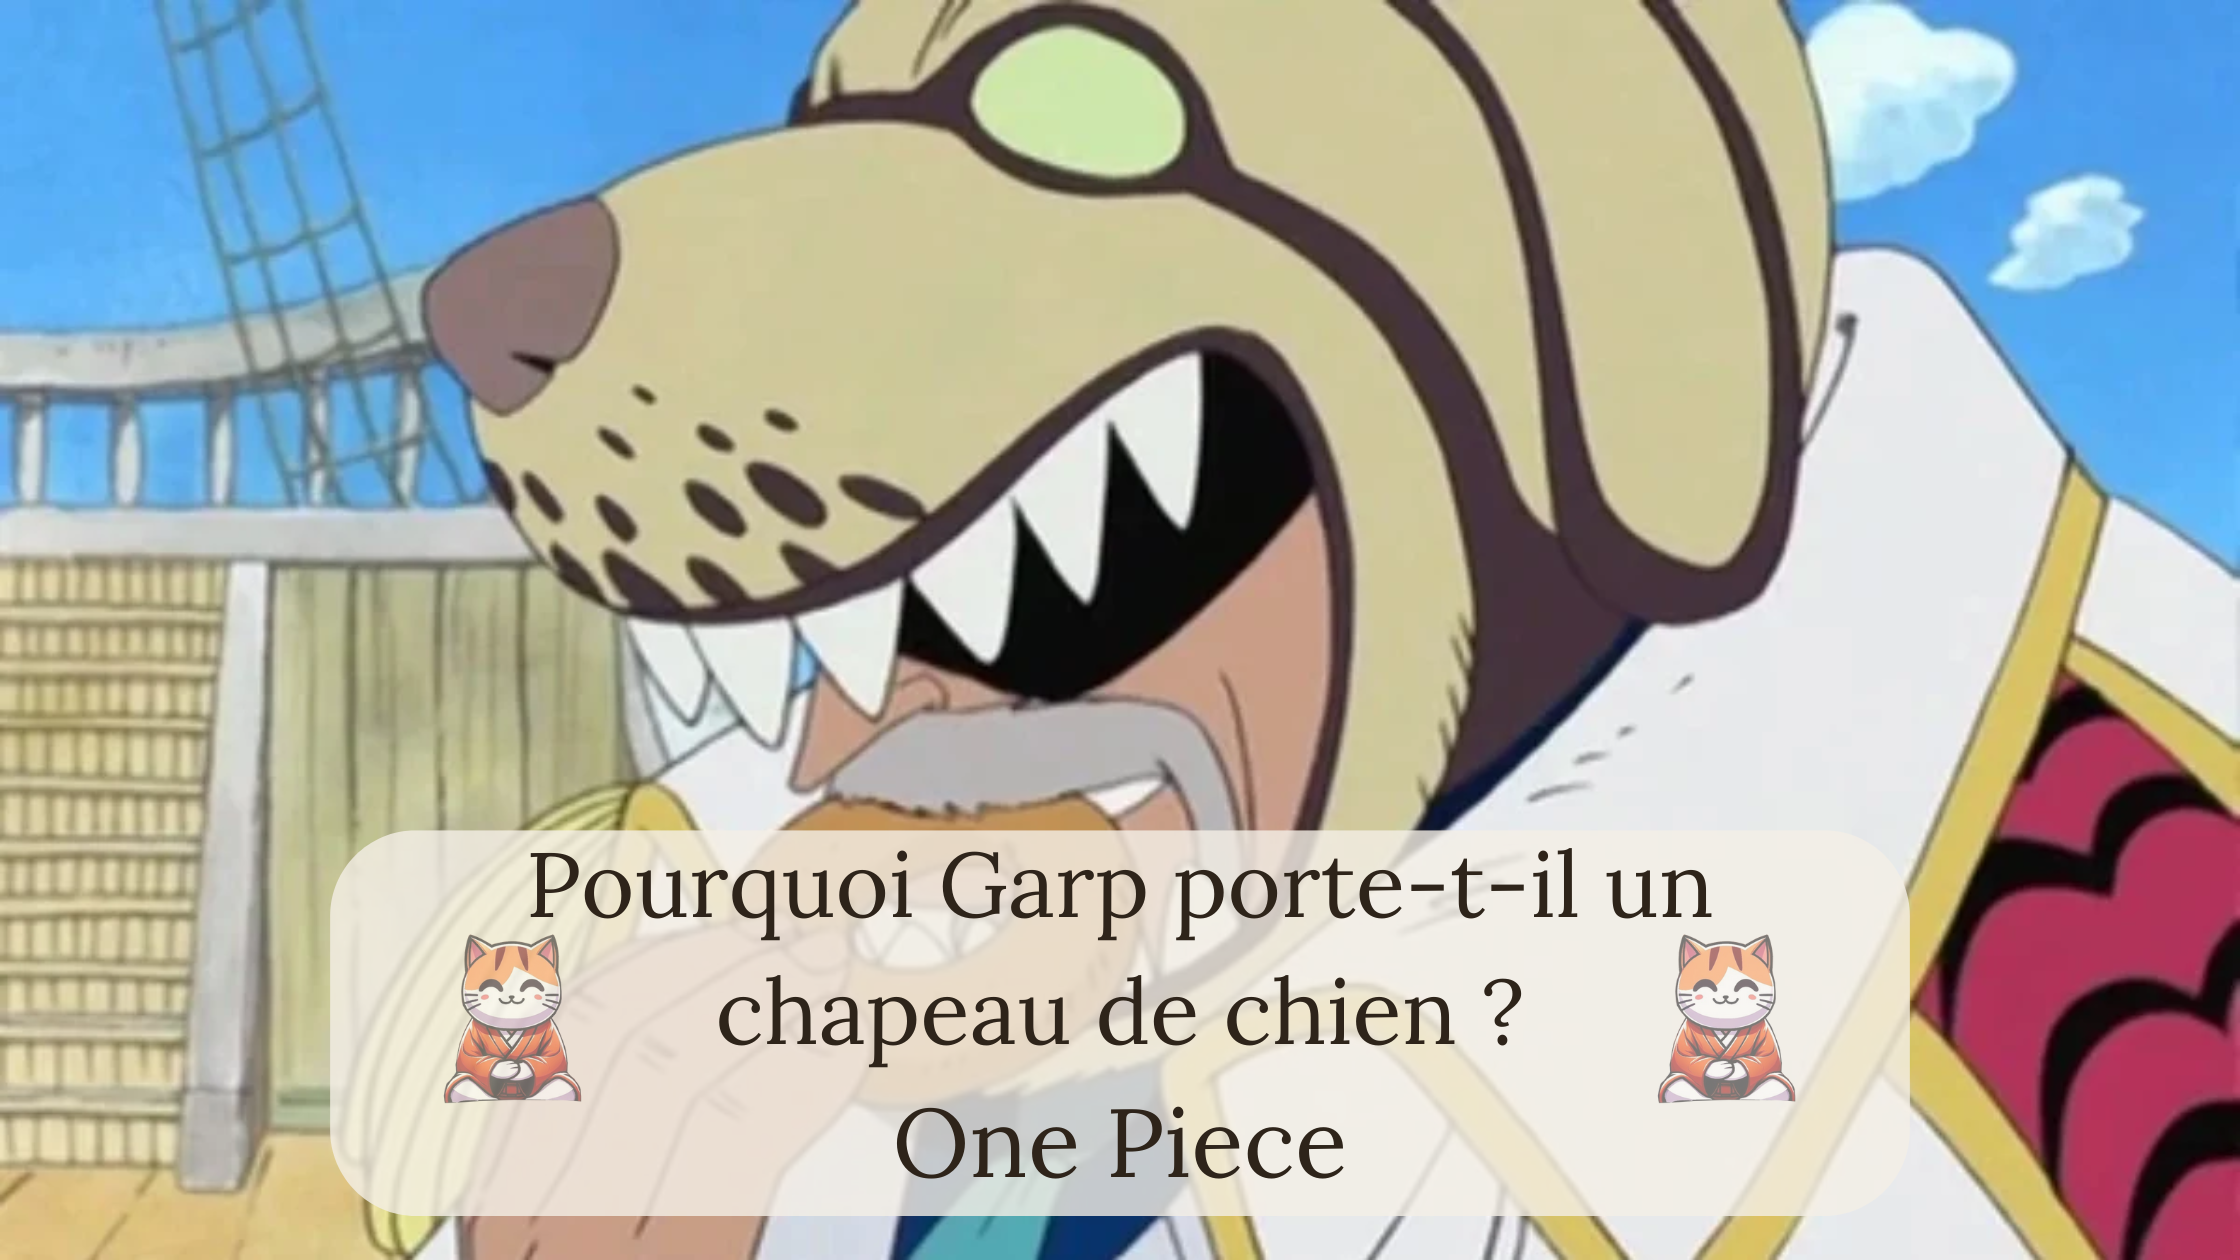 One Piece : Pourquoi Garp porte-t-il un chapeau de chien ?